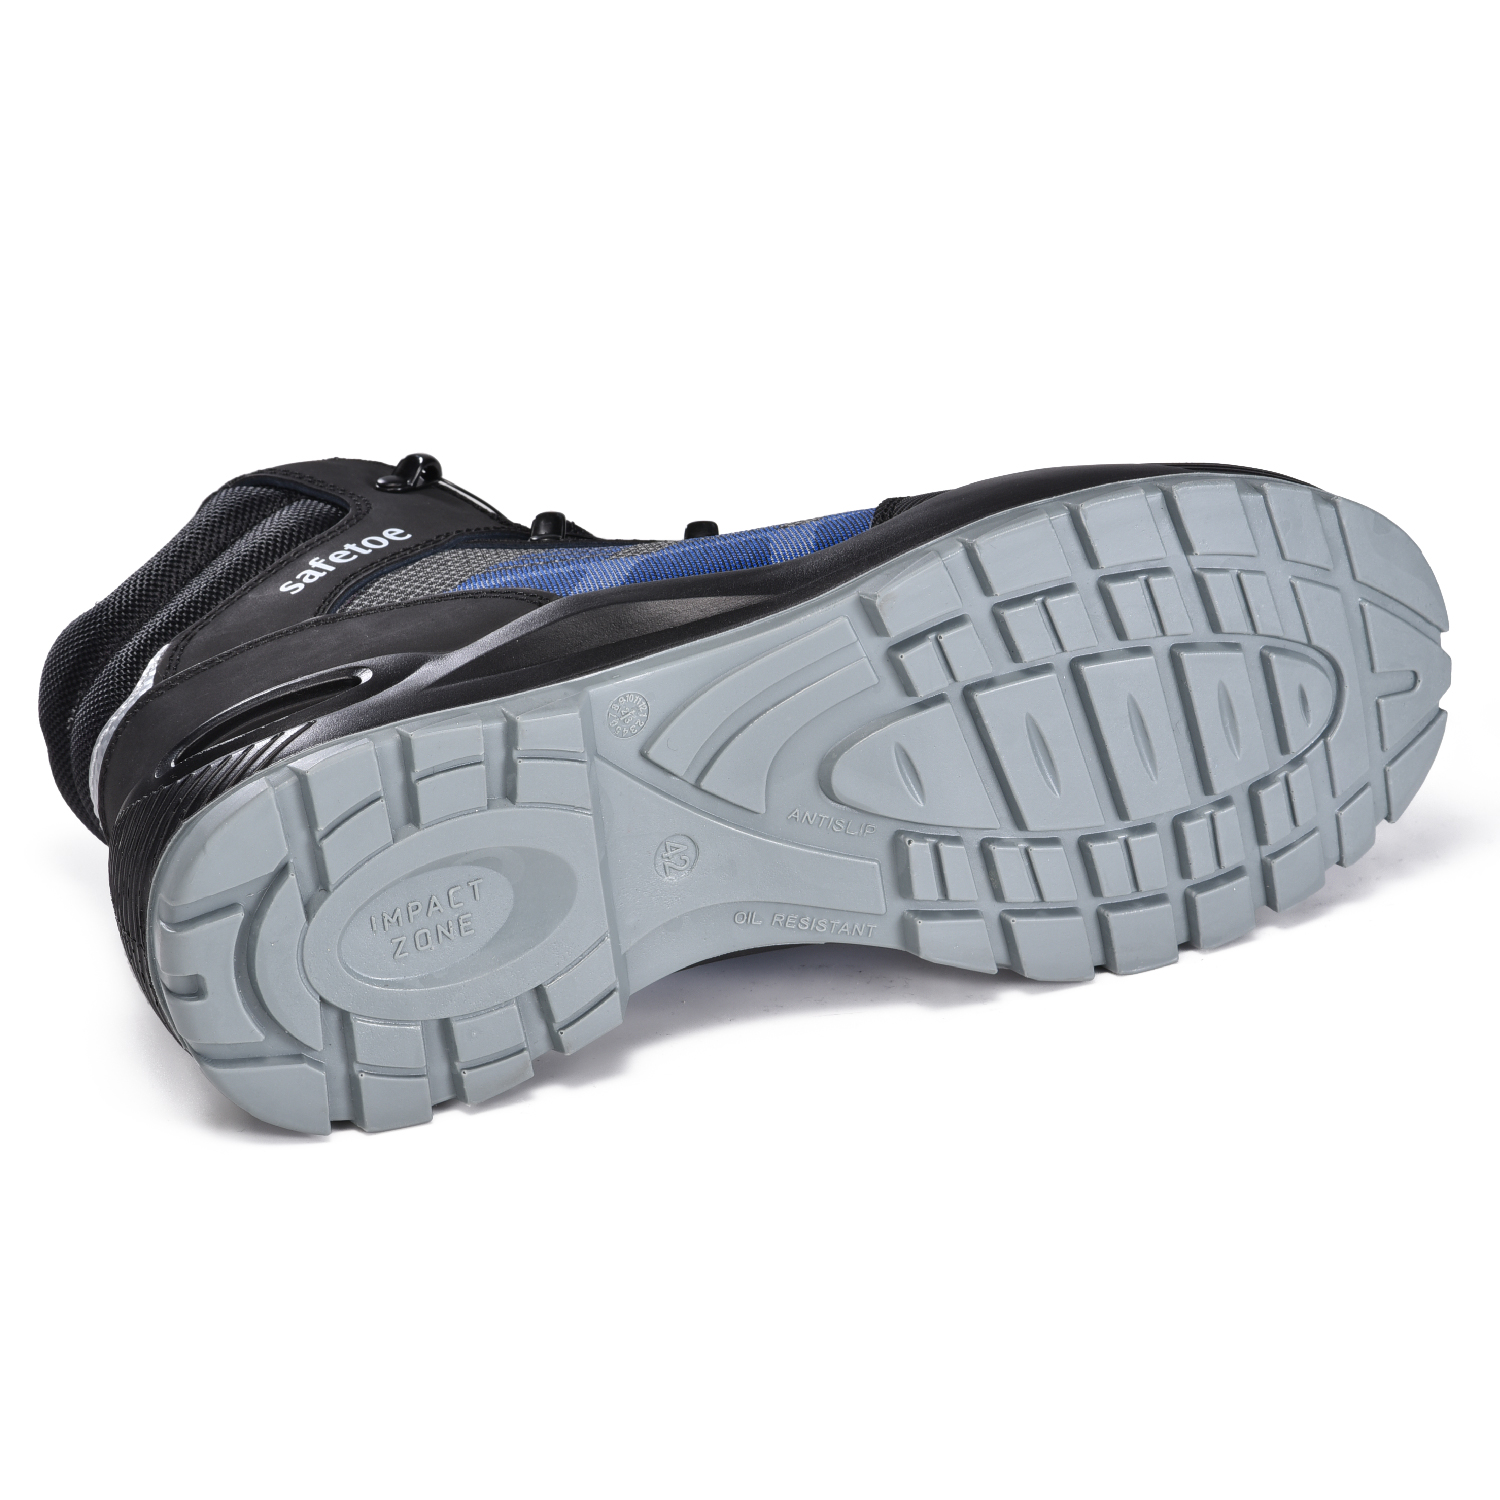 Pulsante rotante Nuove scarpe antinfortunistiche con manopola girevole Sistema Boa M-8572